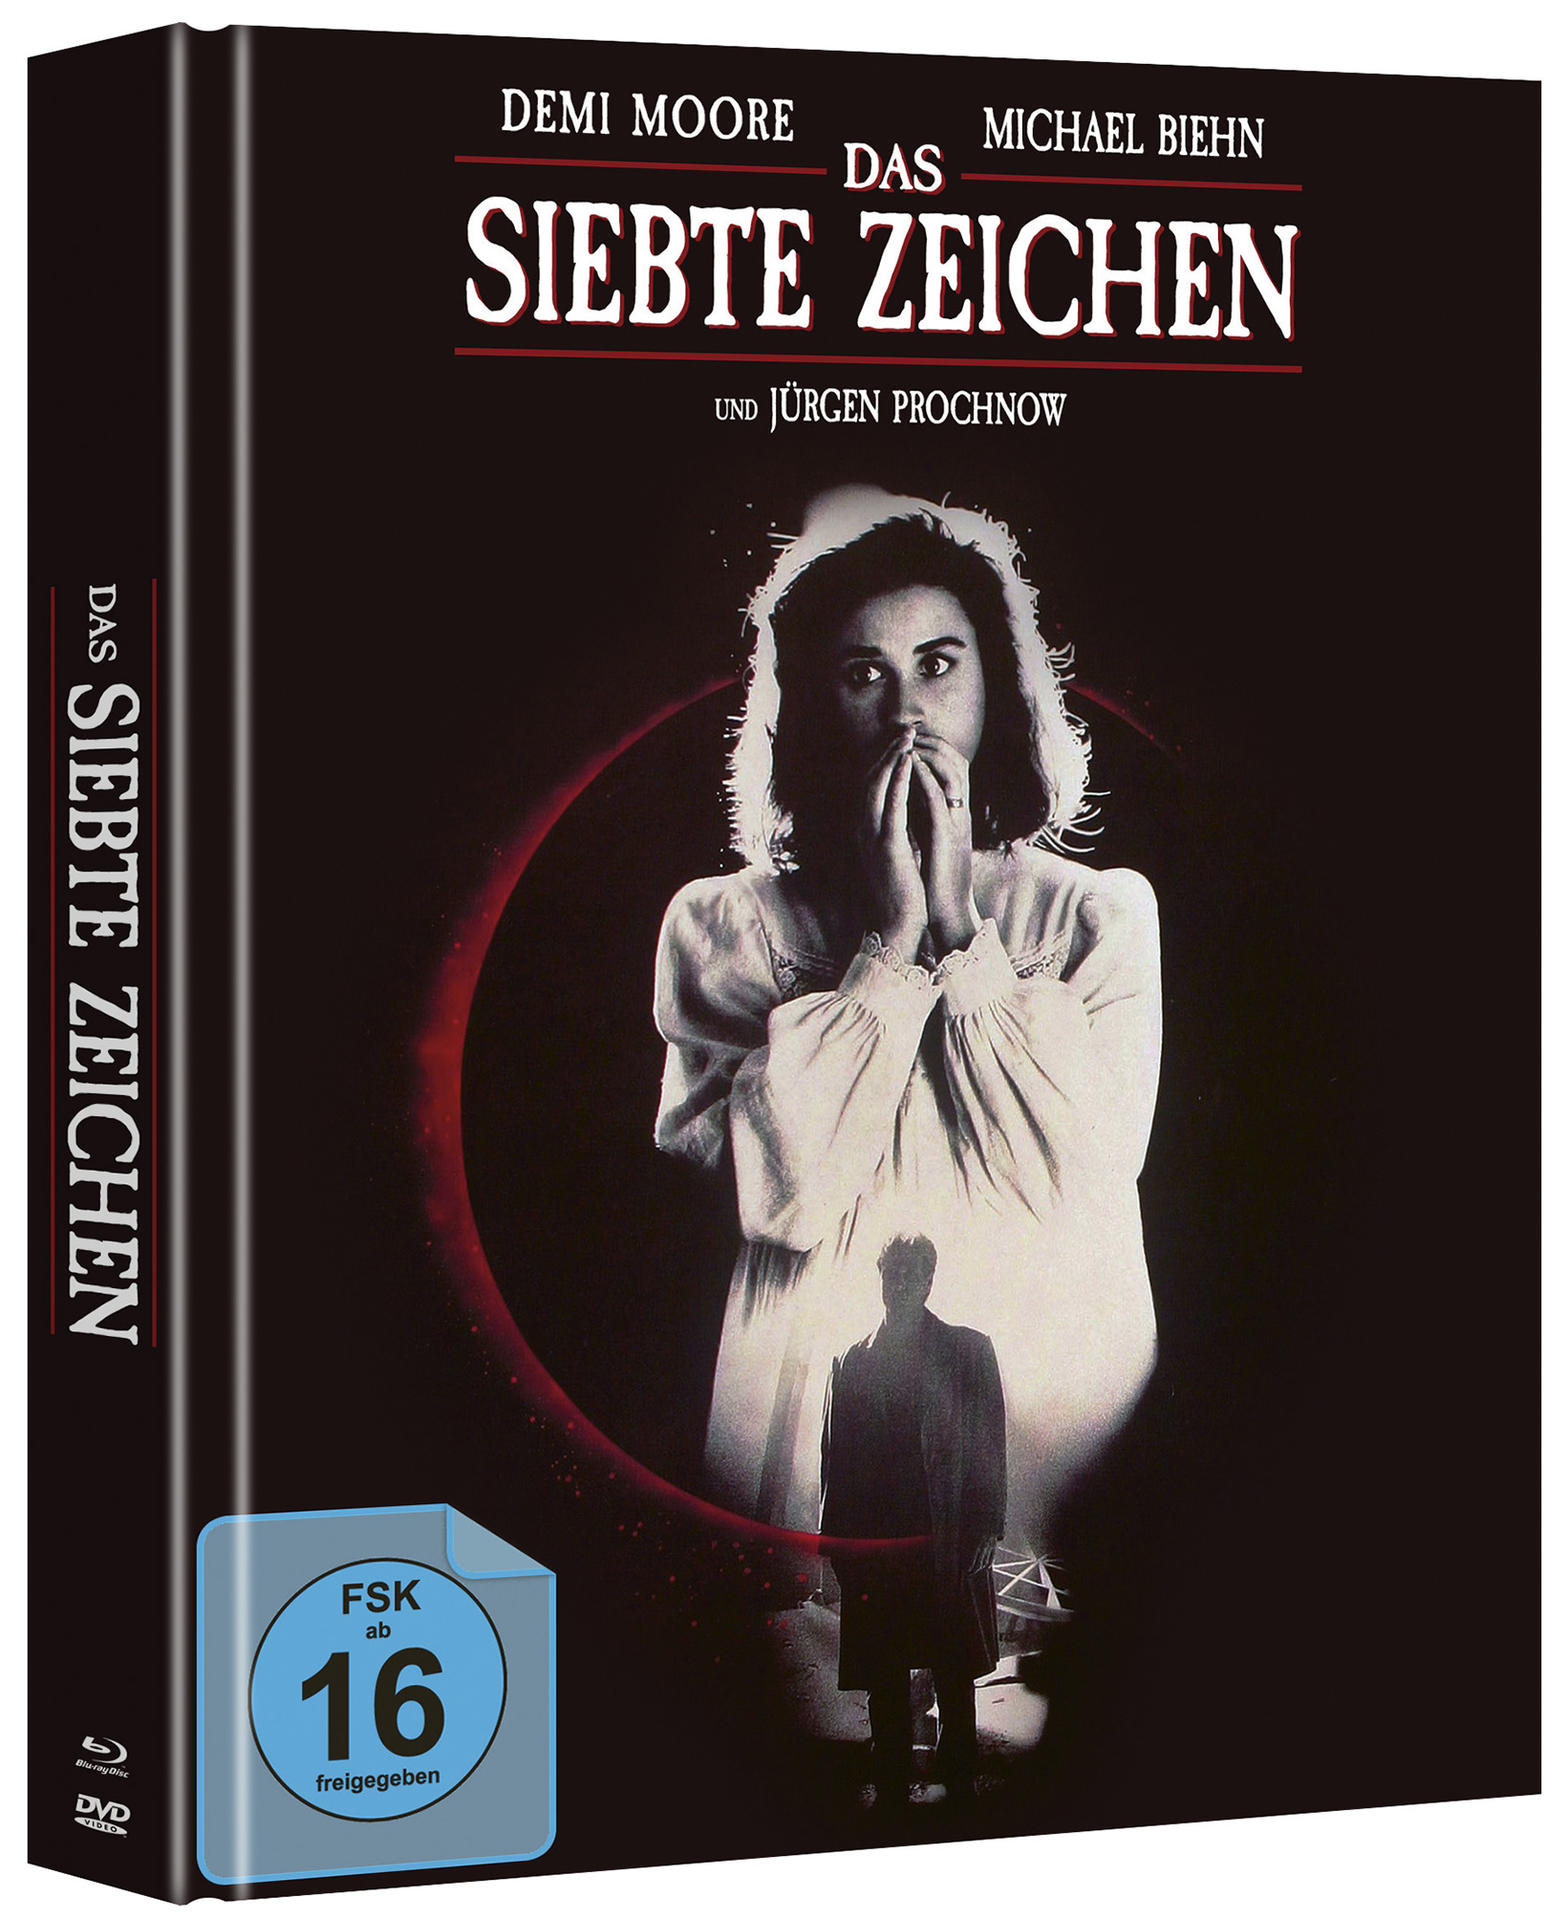 Das Siebte Zeichen Blu-ray + DVD